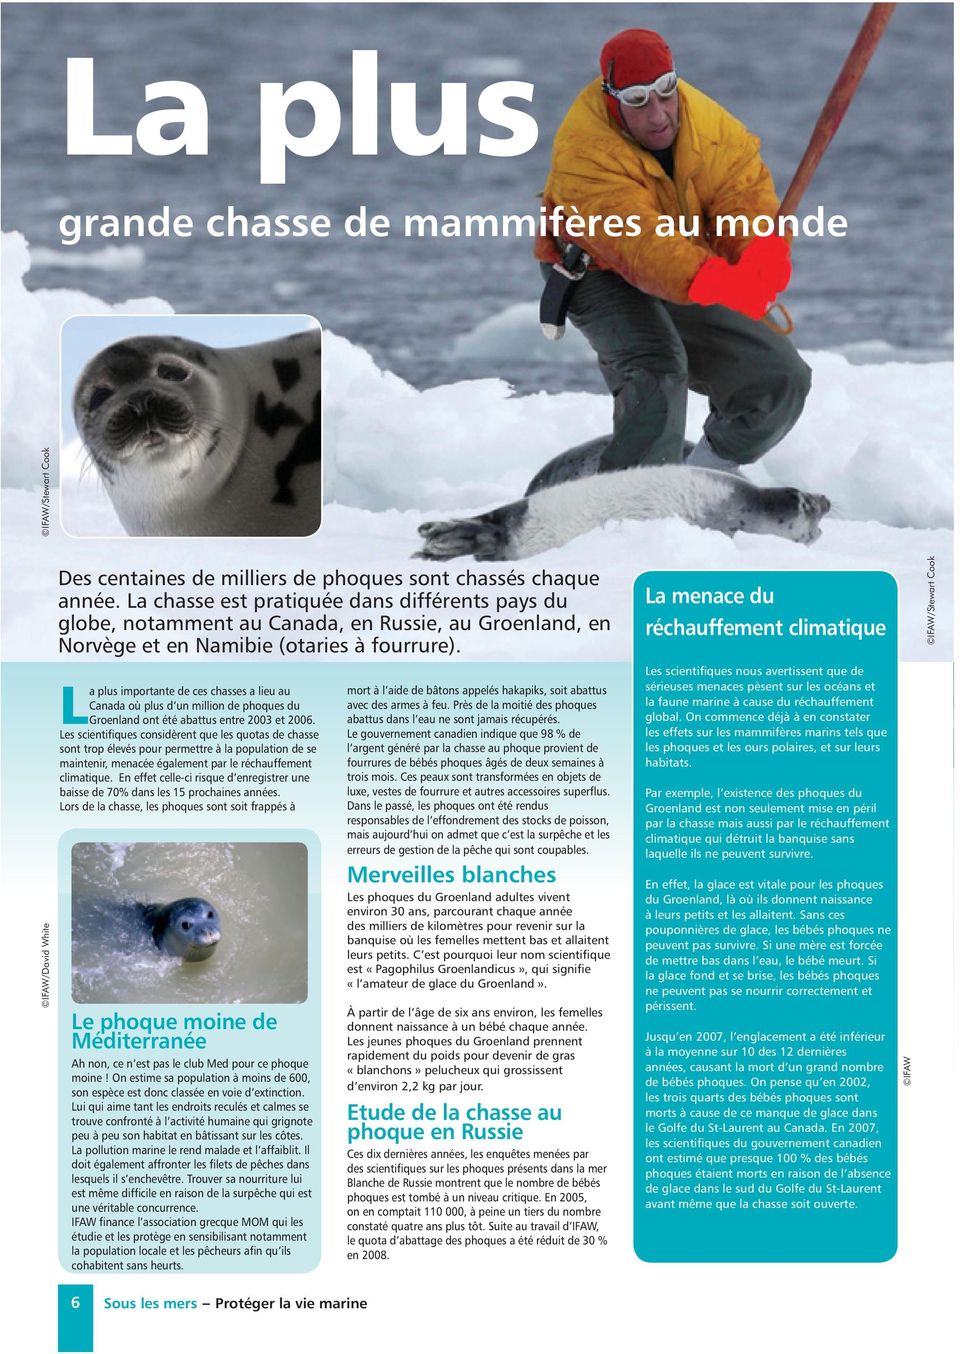 a plus importante de ces chasses a lieu au Canada où plus d un million de phoques du LGroenland ont été abattus entre 2003 et 2006.